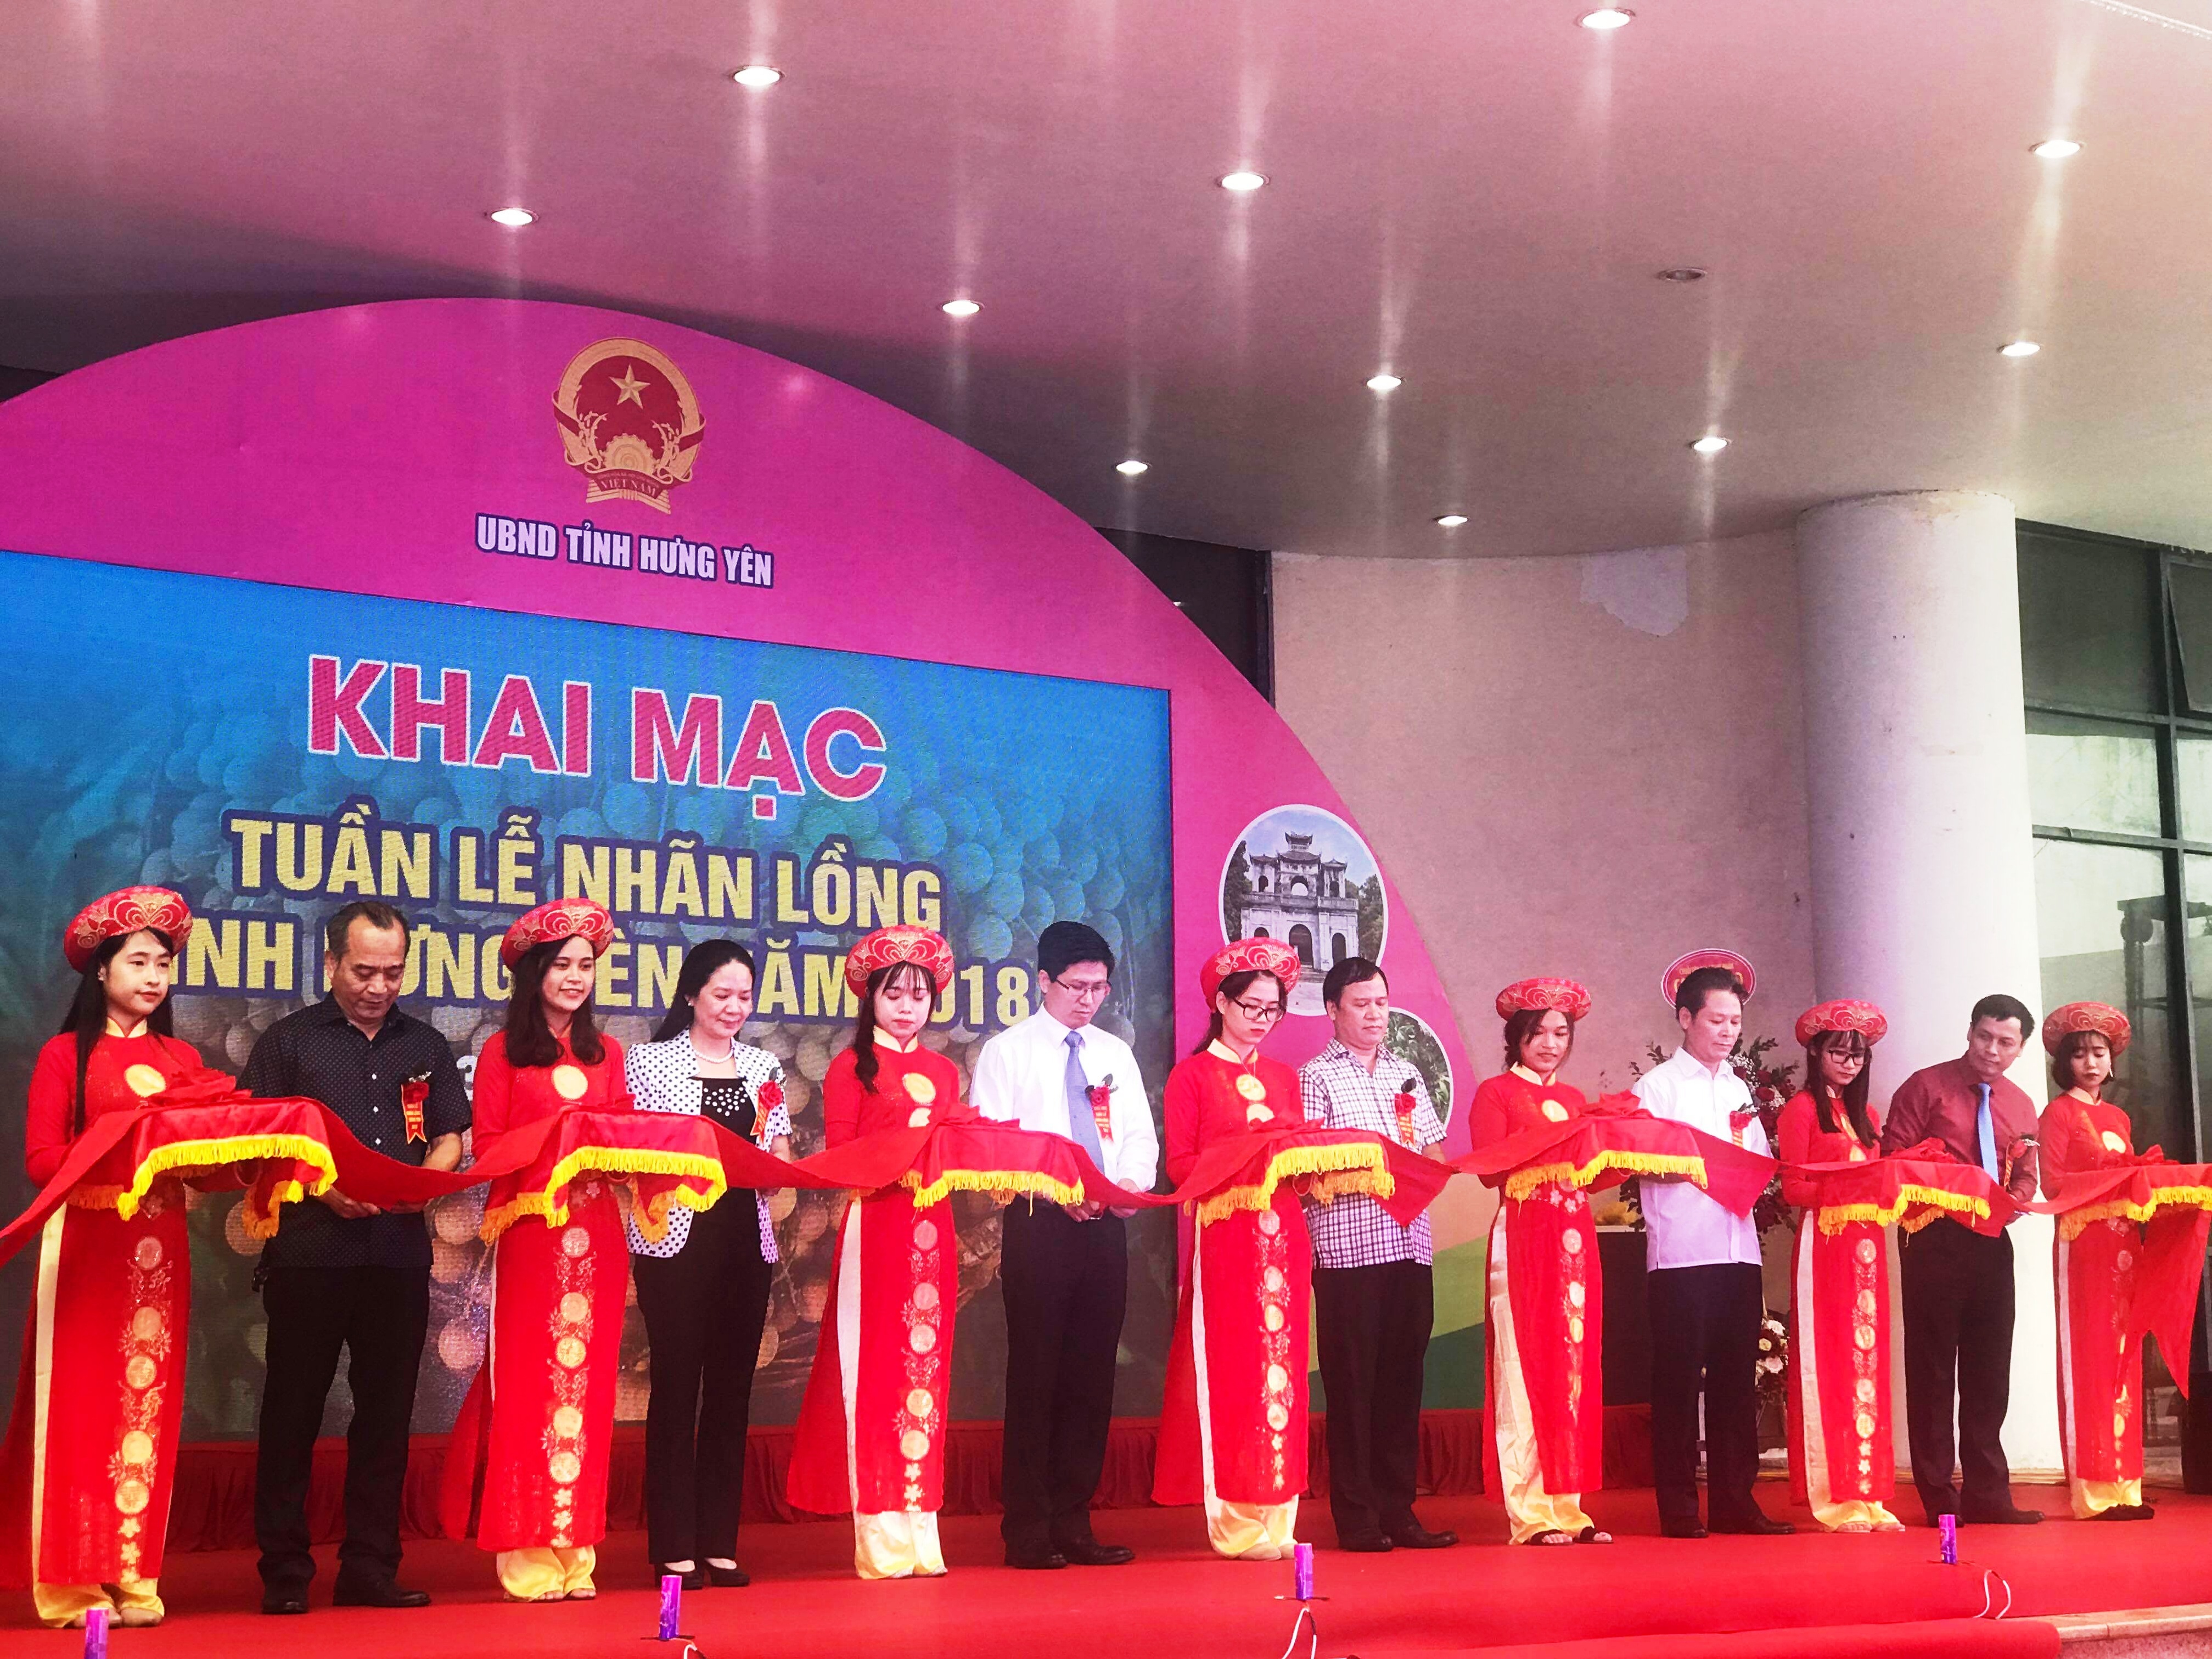 Các đại biểu cắt băng khai mạc Tuần lễ nhãn lồng Hưng Yên tại Hà Nội .